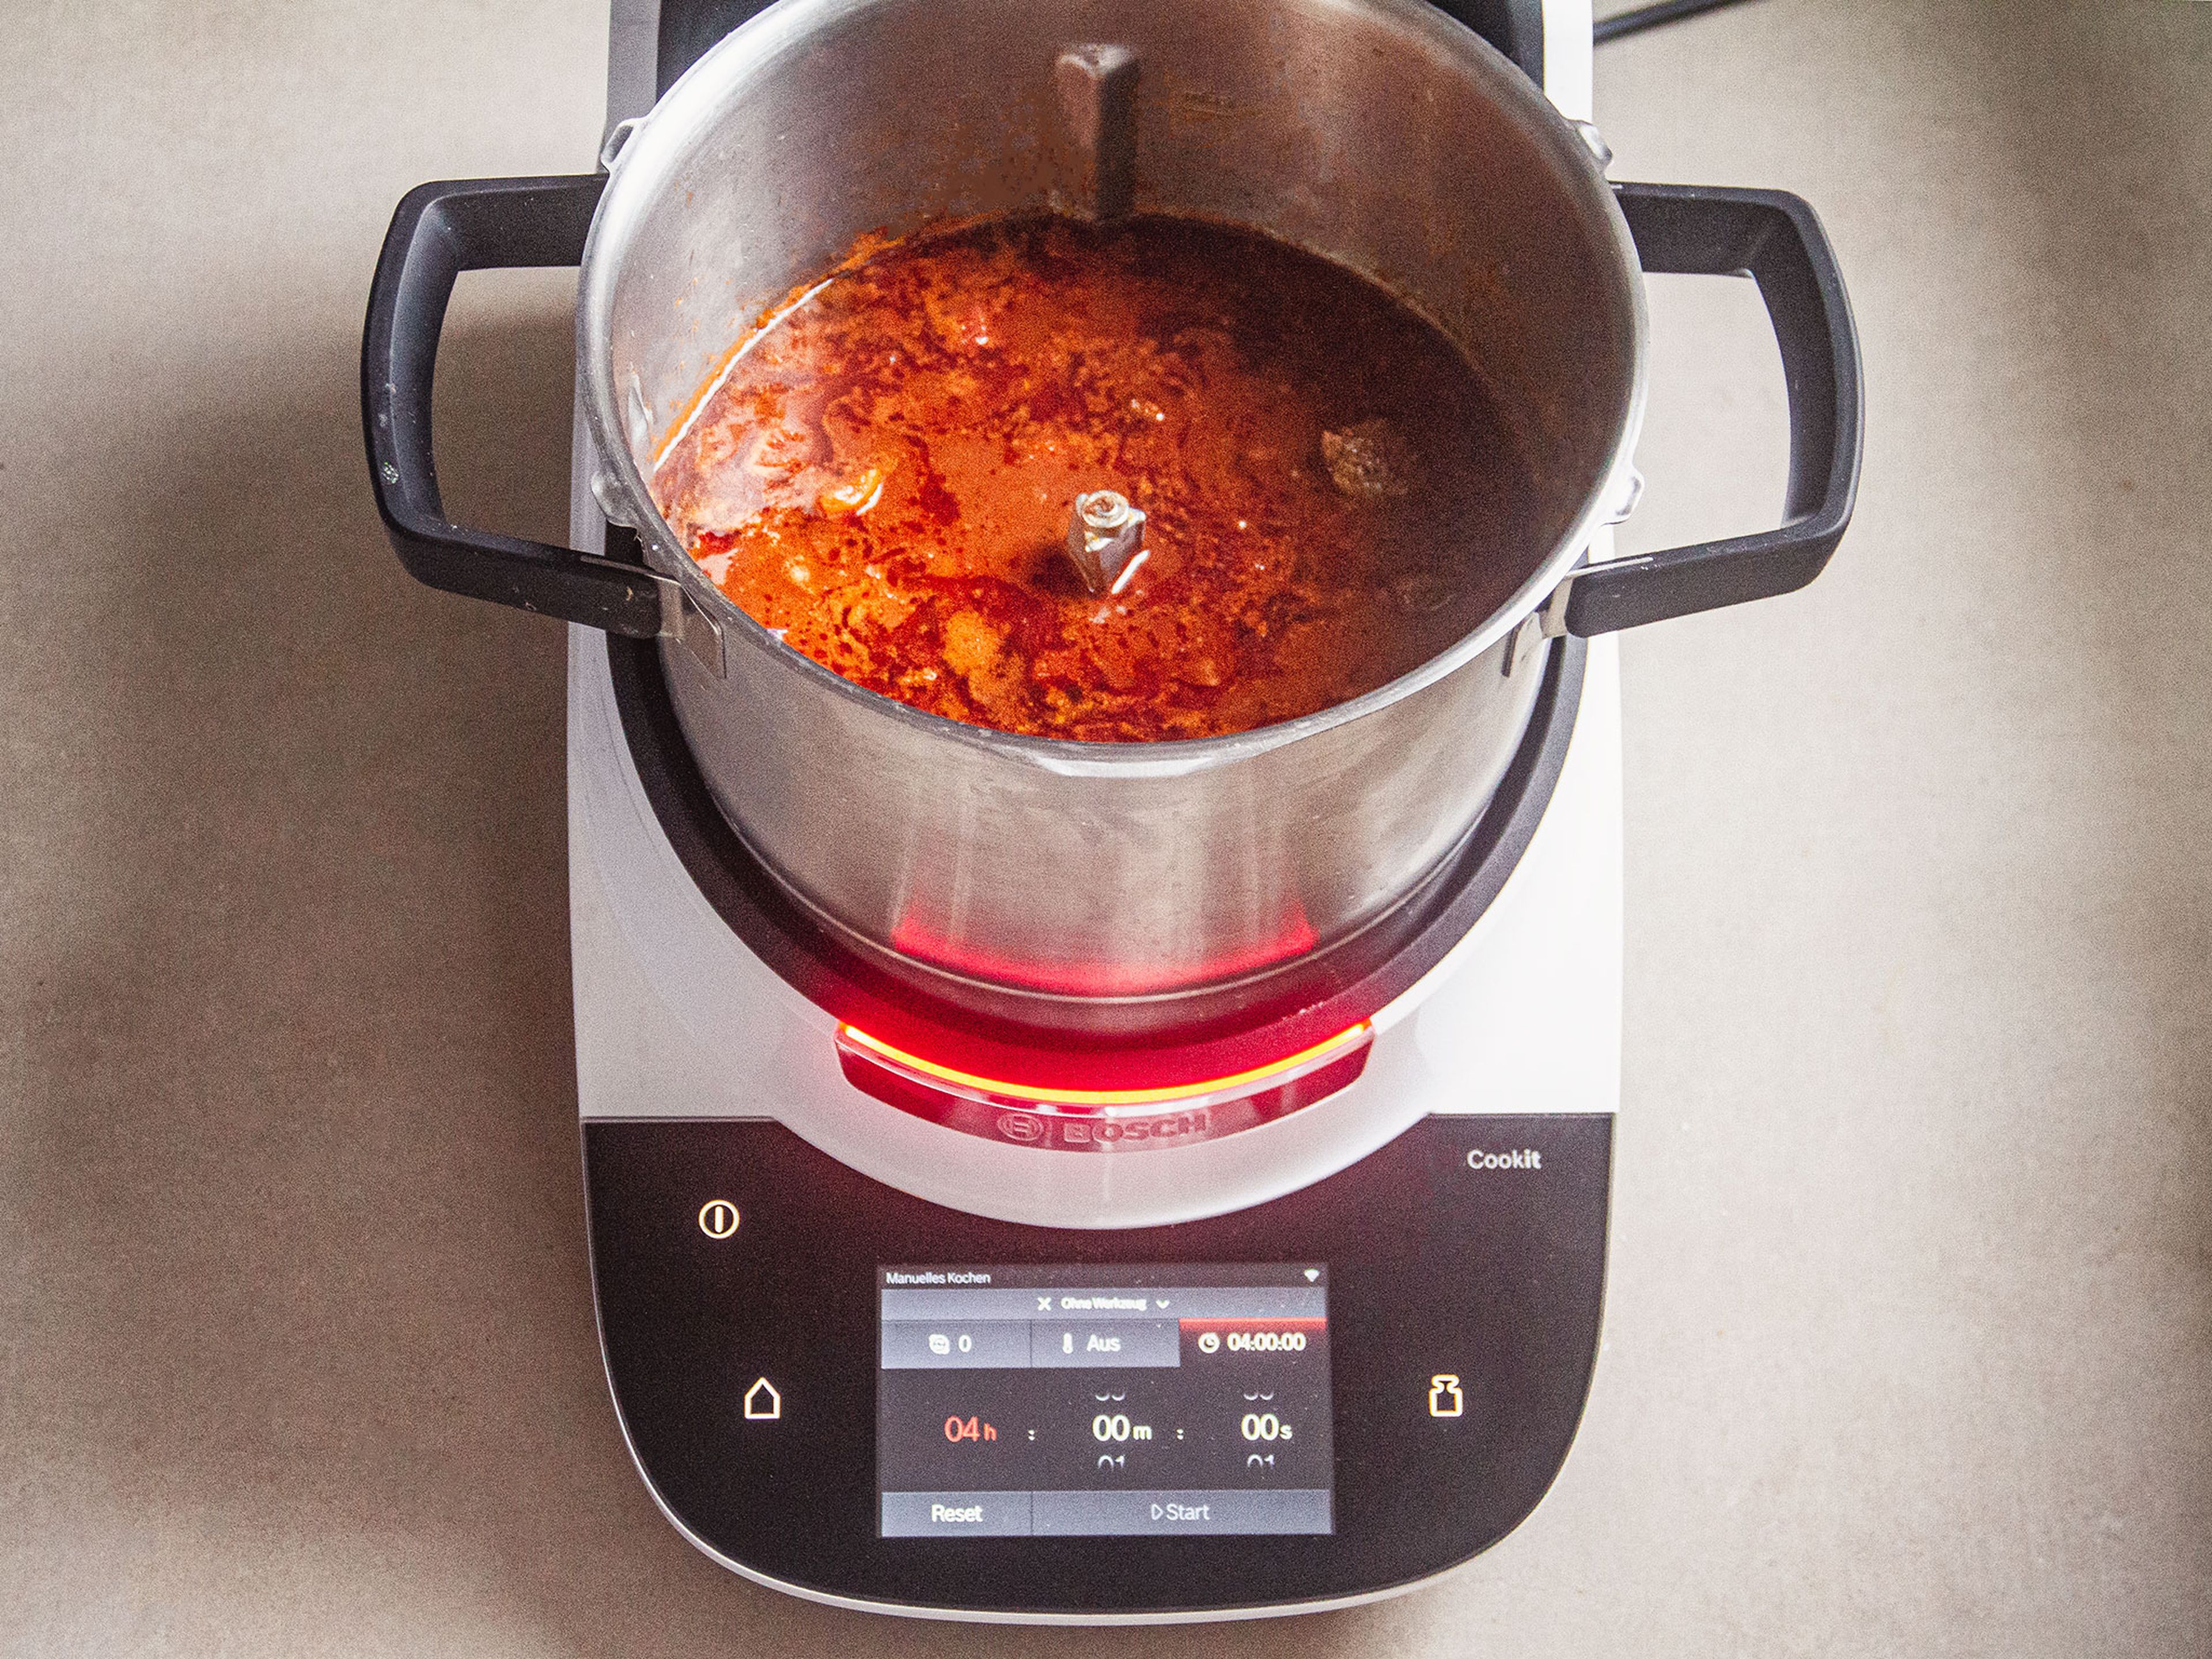 Anschließend 50 ml Öl in den Topf geben, den 3D-Rührer einsetzen, den Deckel schließen und den Messbecher einsetzen. Die Zwiebeln und den Knoblauch anbraten (3D-Rührer, Stufe 5, 130°C, 10 Min.). Das Paprikapulver und das Tomatenmark in den Topf geben und anschwitzen (3D-Rührer, Stufe 5, 130°C, 3 Min.). Dann das Fleisch und alle weiteren  Zutaten, bis auf die Bohnen, den Limettensaft und -abrieb, in den Topf geben und bei geschlossenem Deckel und mit dem eingesetzten Messbecher köcheln lassen (3D-Rührer, Stufe 3, 99°C, 7 Min.).  Anschließen für weitere ca. 3,5 Std. schmoren lassen (Stufe 2, 99°C, 210 Min.). Dann den 3D-Rührer entnehmen.